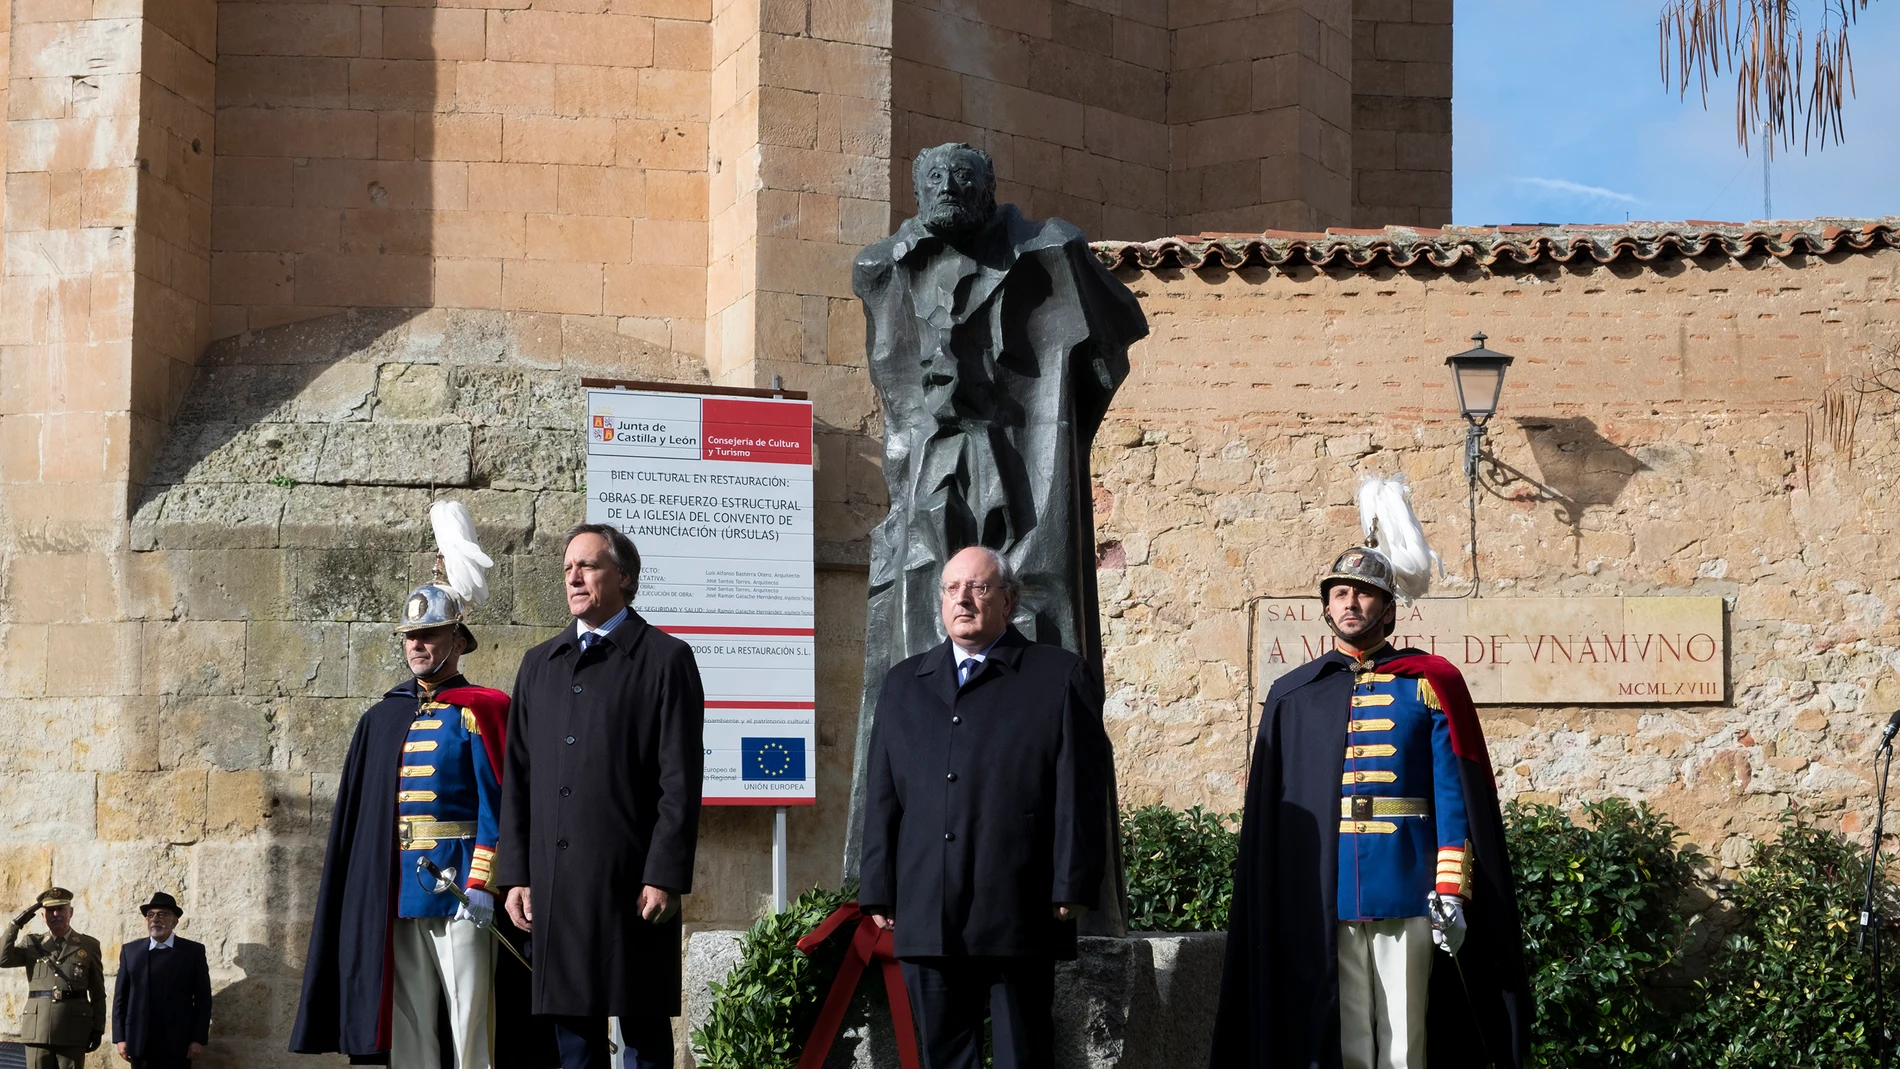 El presidente del CES, Enrique Cabero, realiza la ofrenda floral en homenaje a Miguel Unamuno, junto al alcalde de Salamanca, Carlos García Carbayo